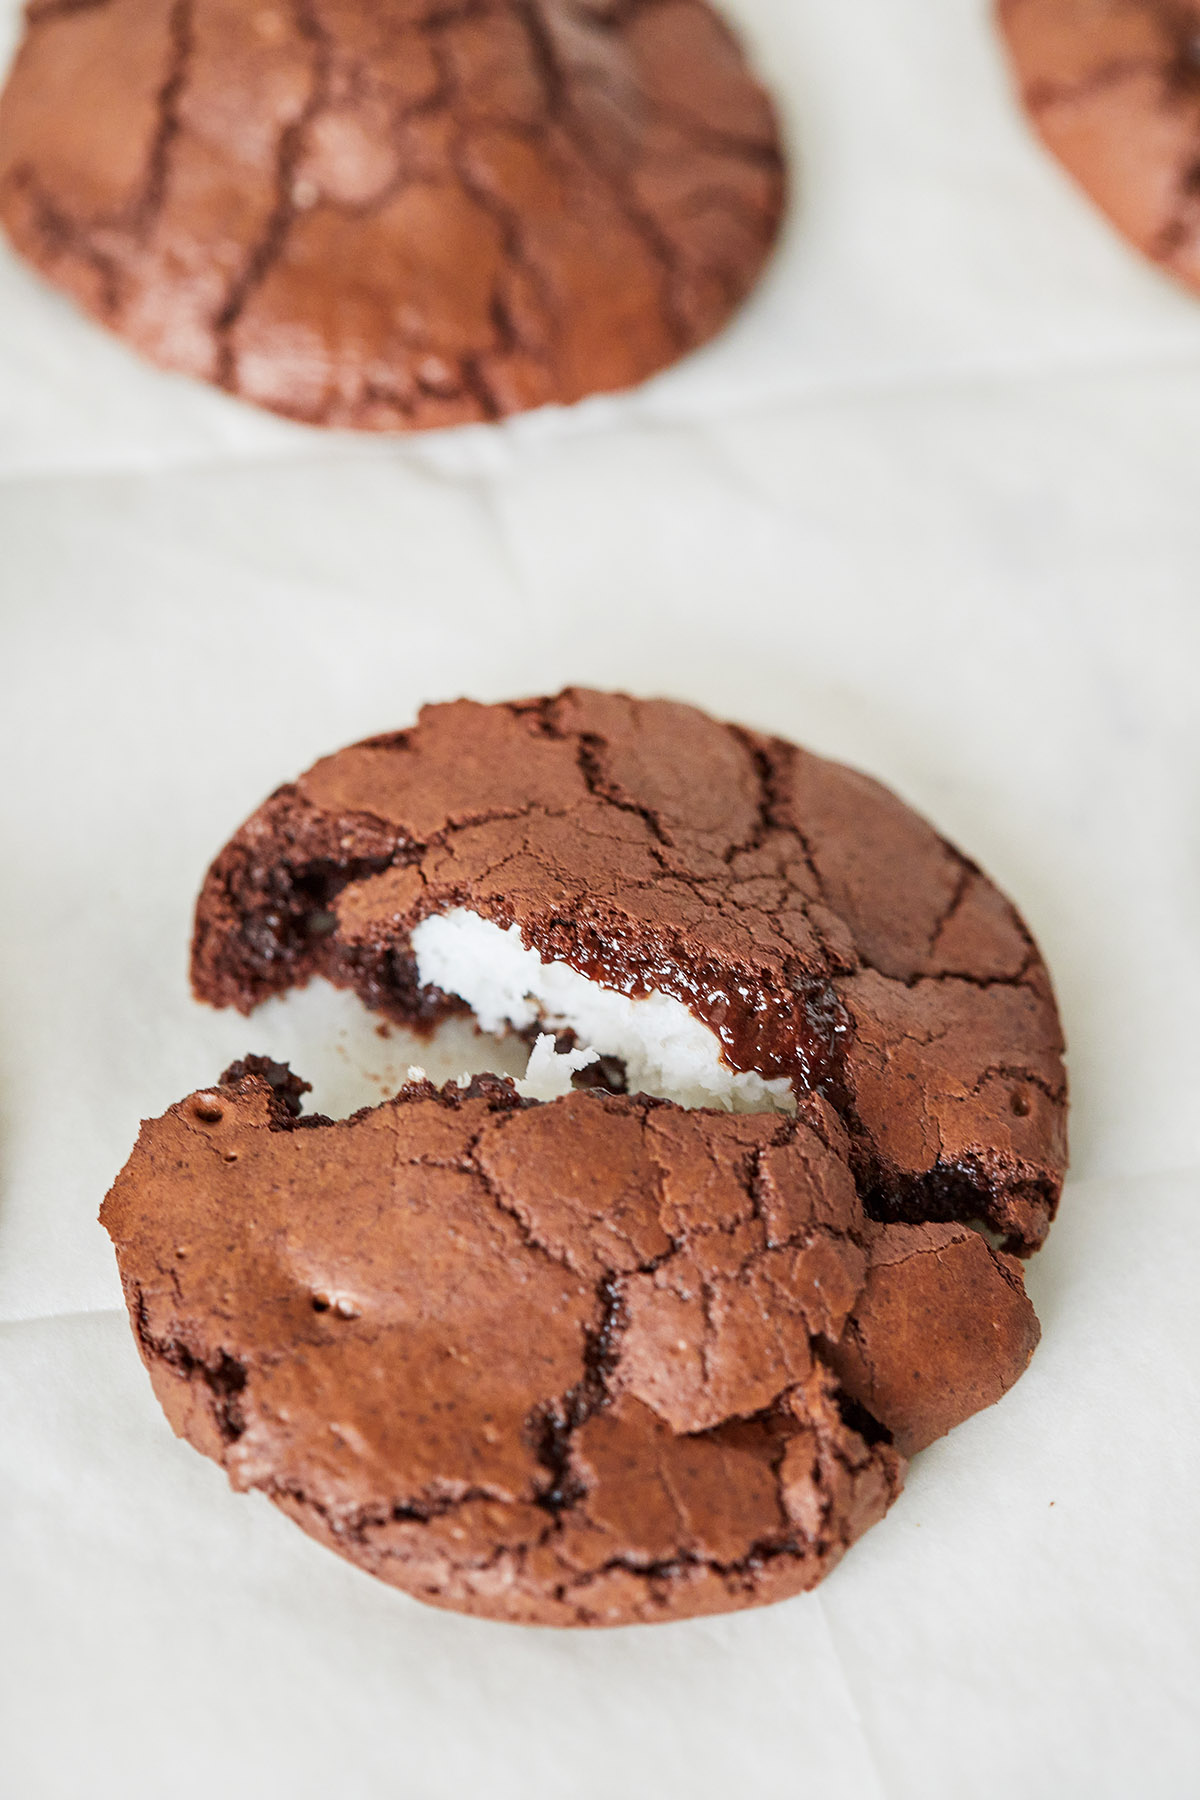 עוגיות בראוניז שוקולד וקוקוס ללא קמח. צילום: טל סיון צפורין